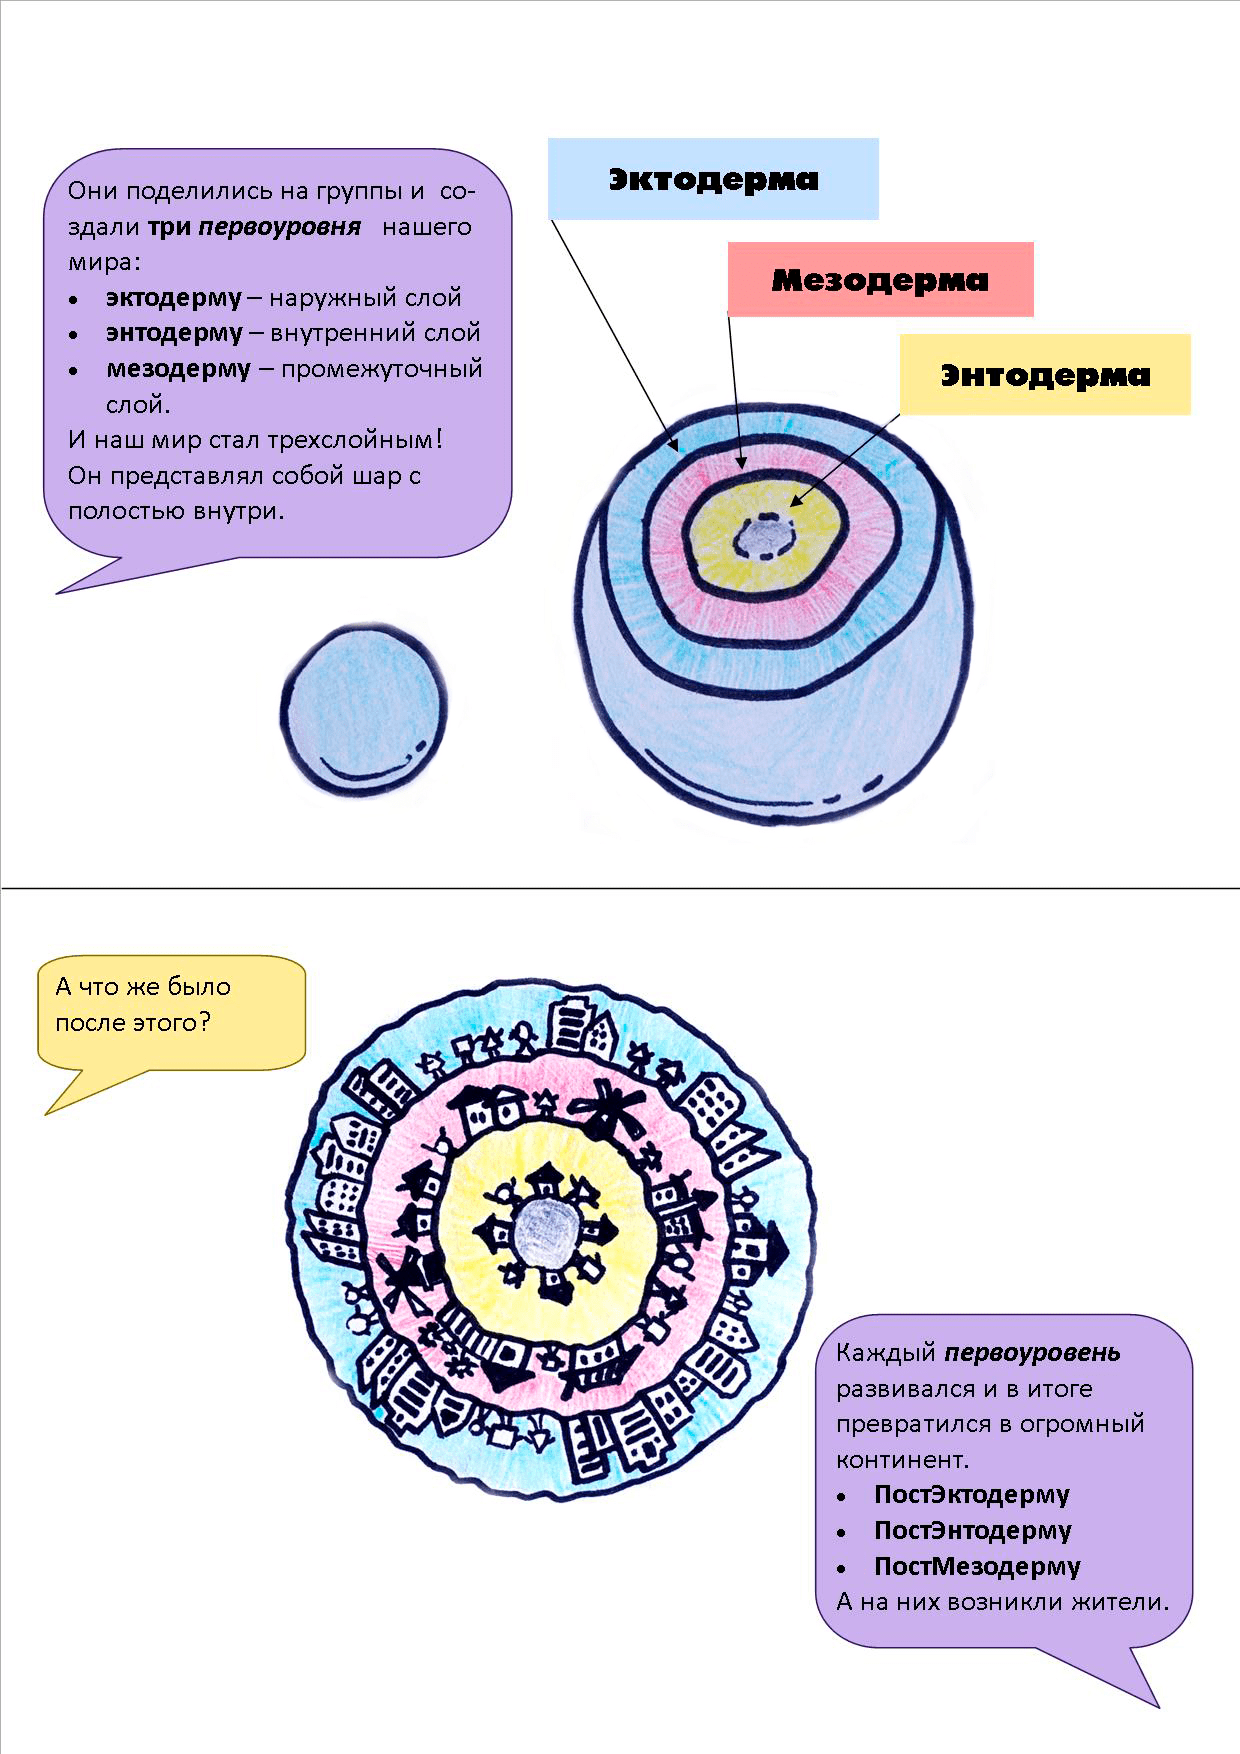 Цито — стволовая клетка